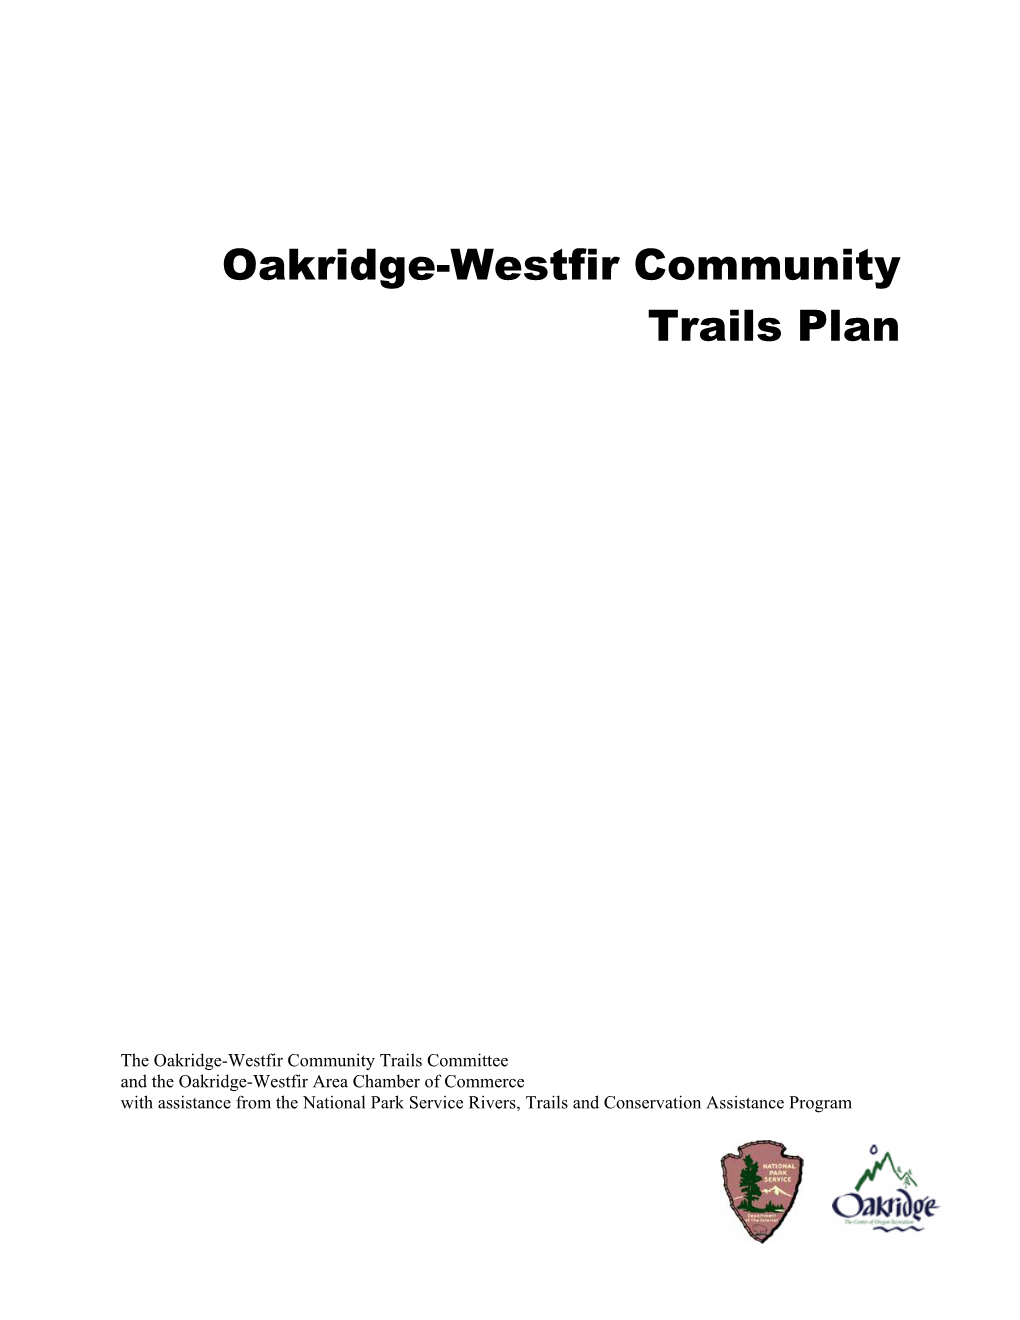 Oakridge-Westfir Community Trails Plan